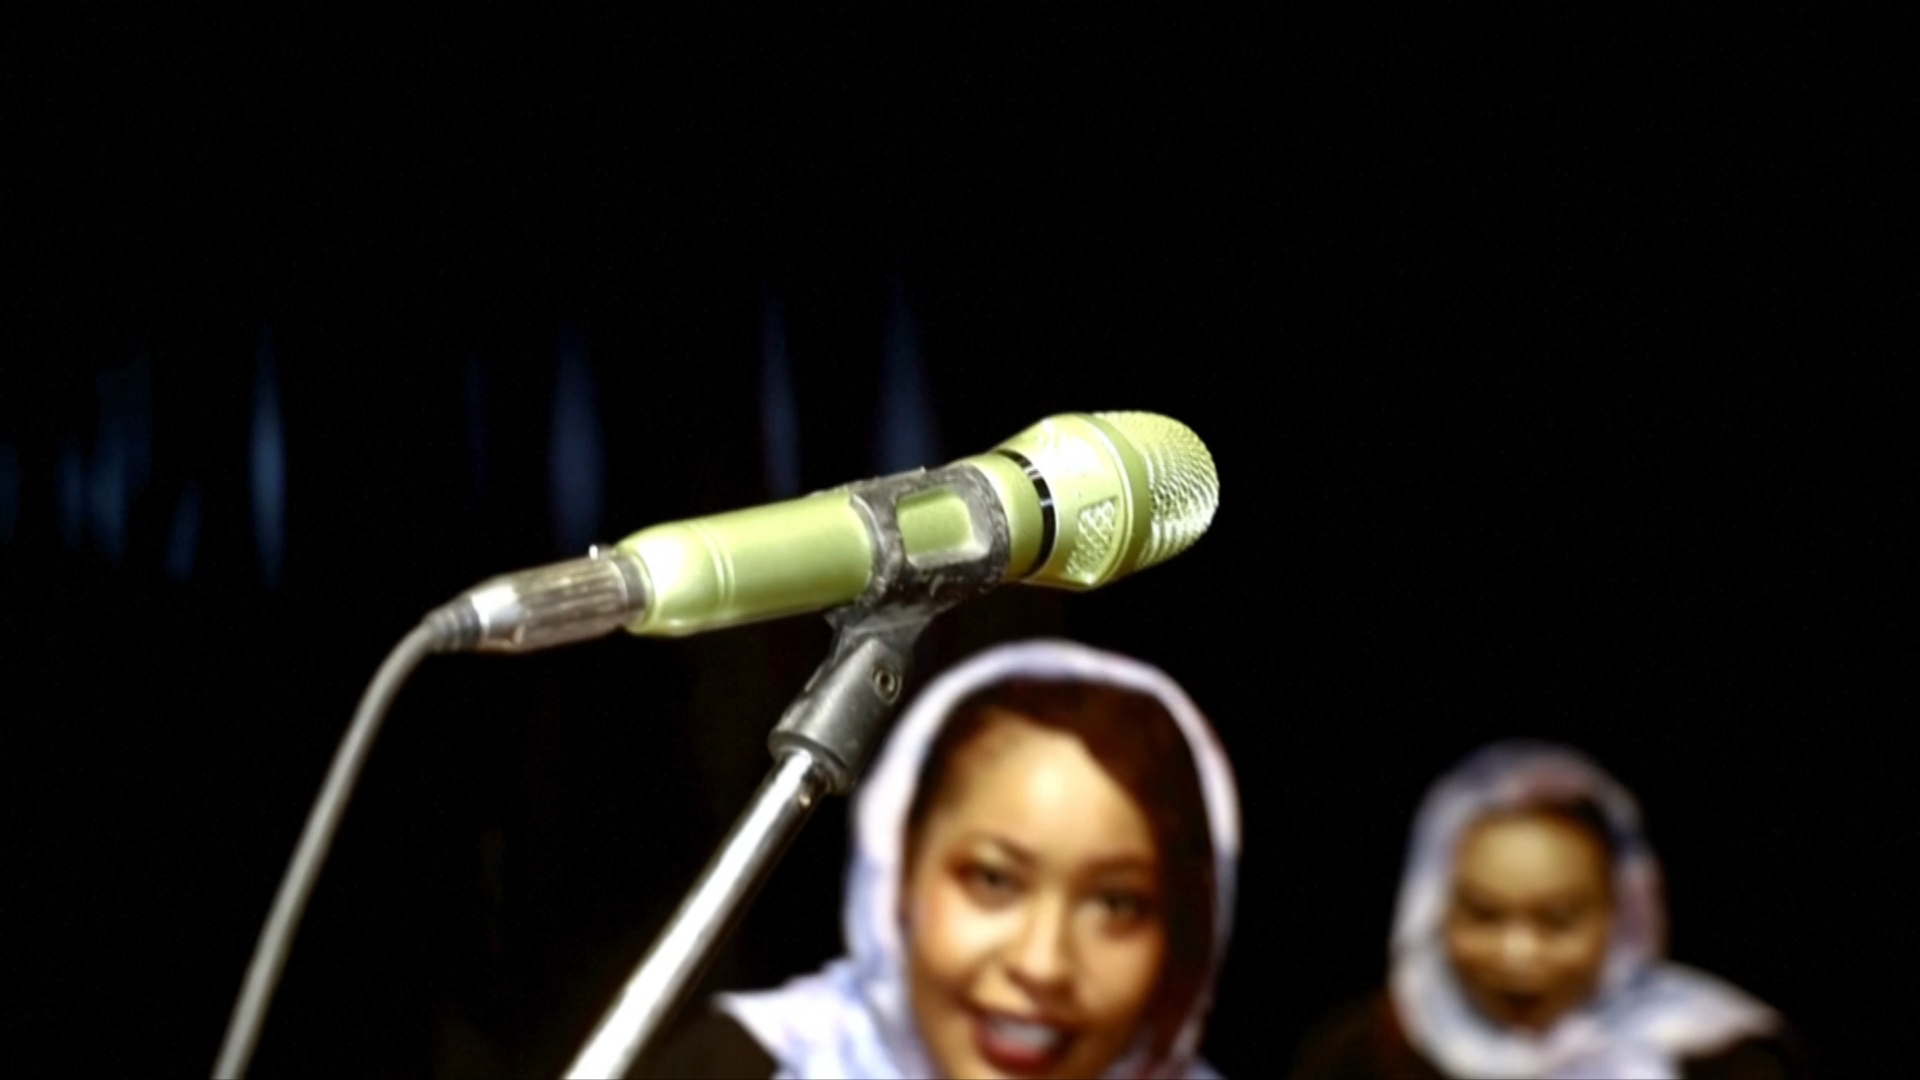 Молодёжь Судана на фоне политических потрясений ищет утешения в искусстве